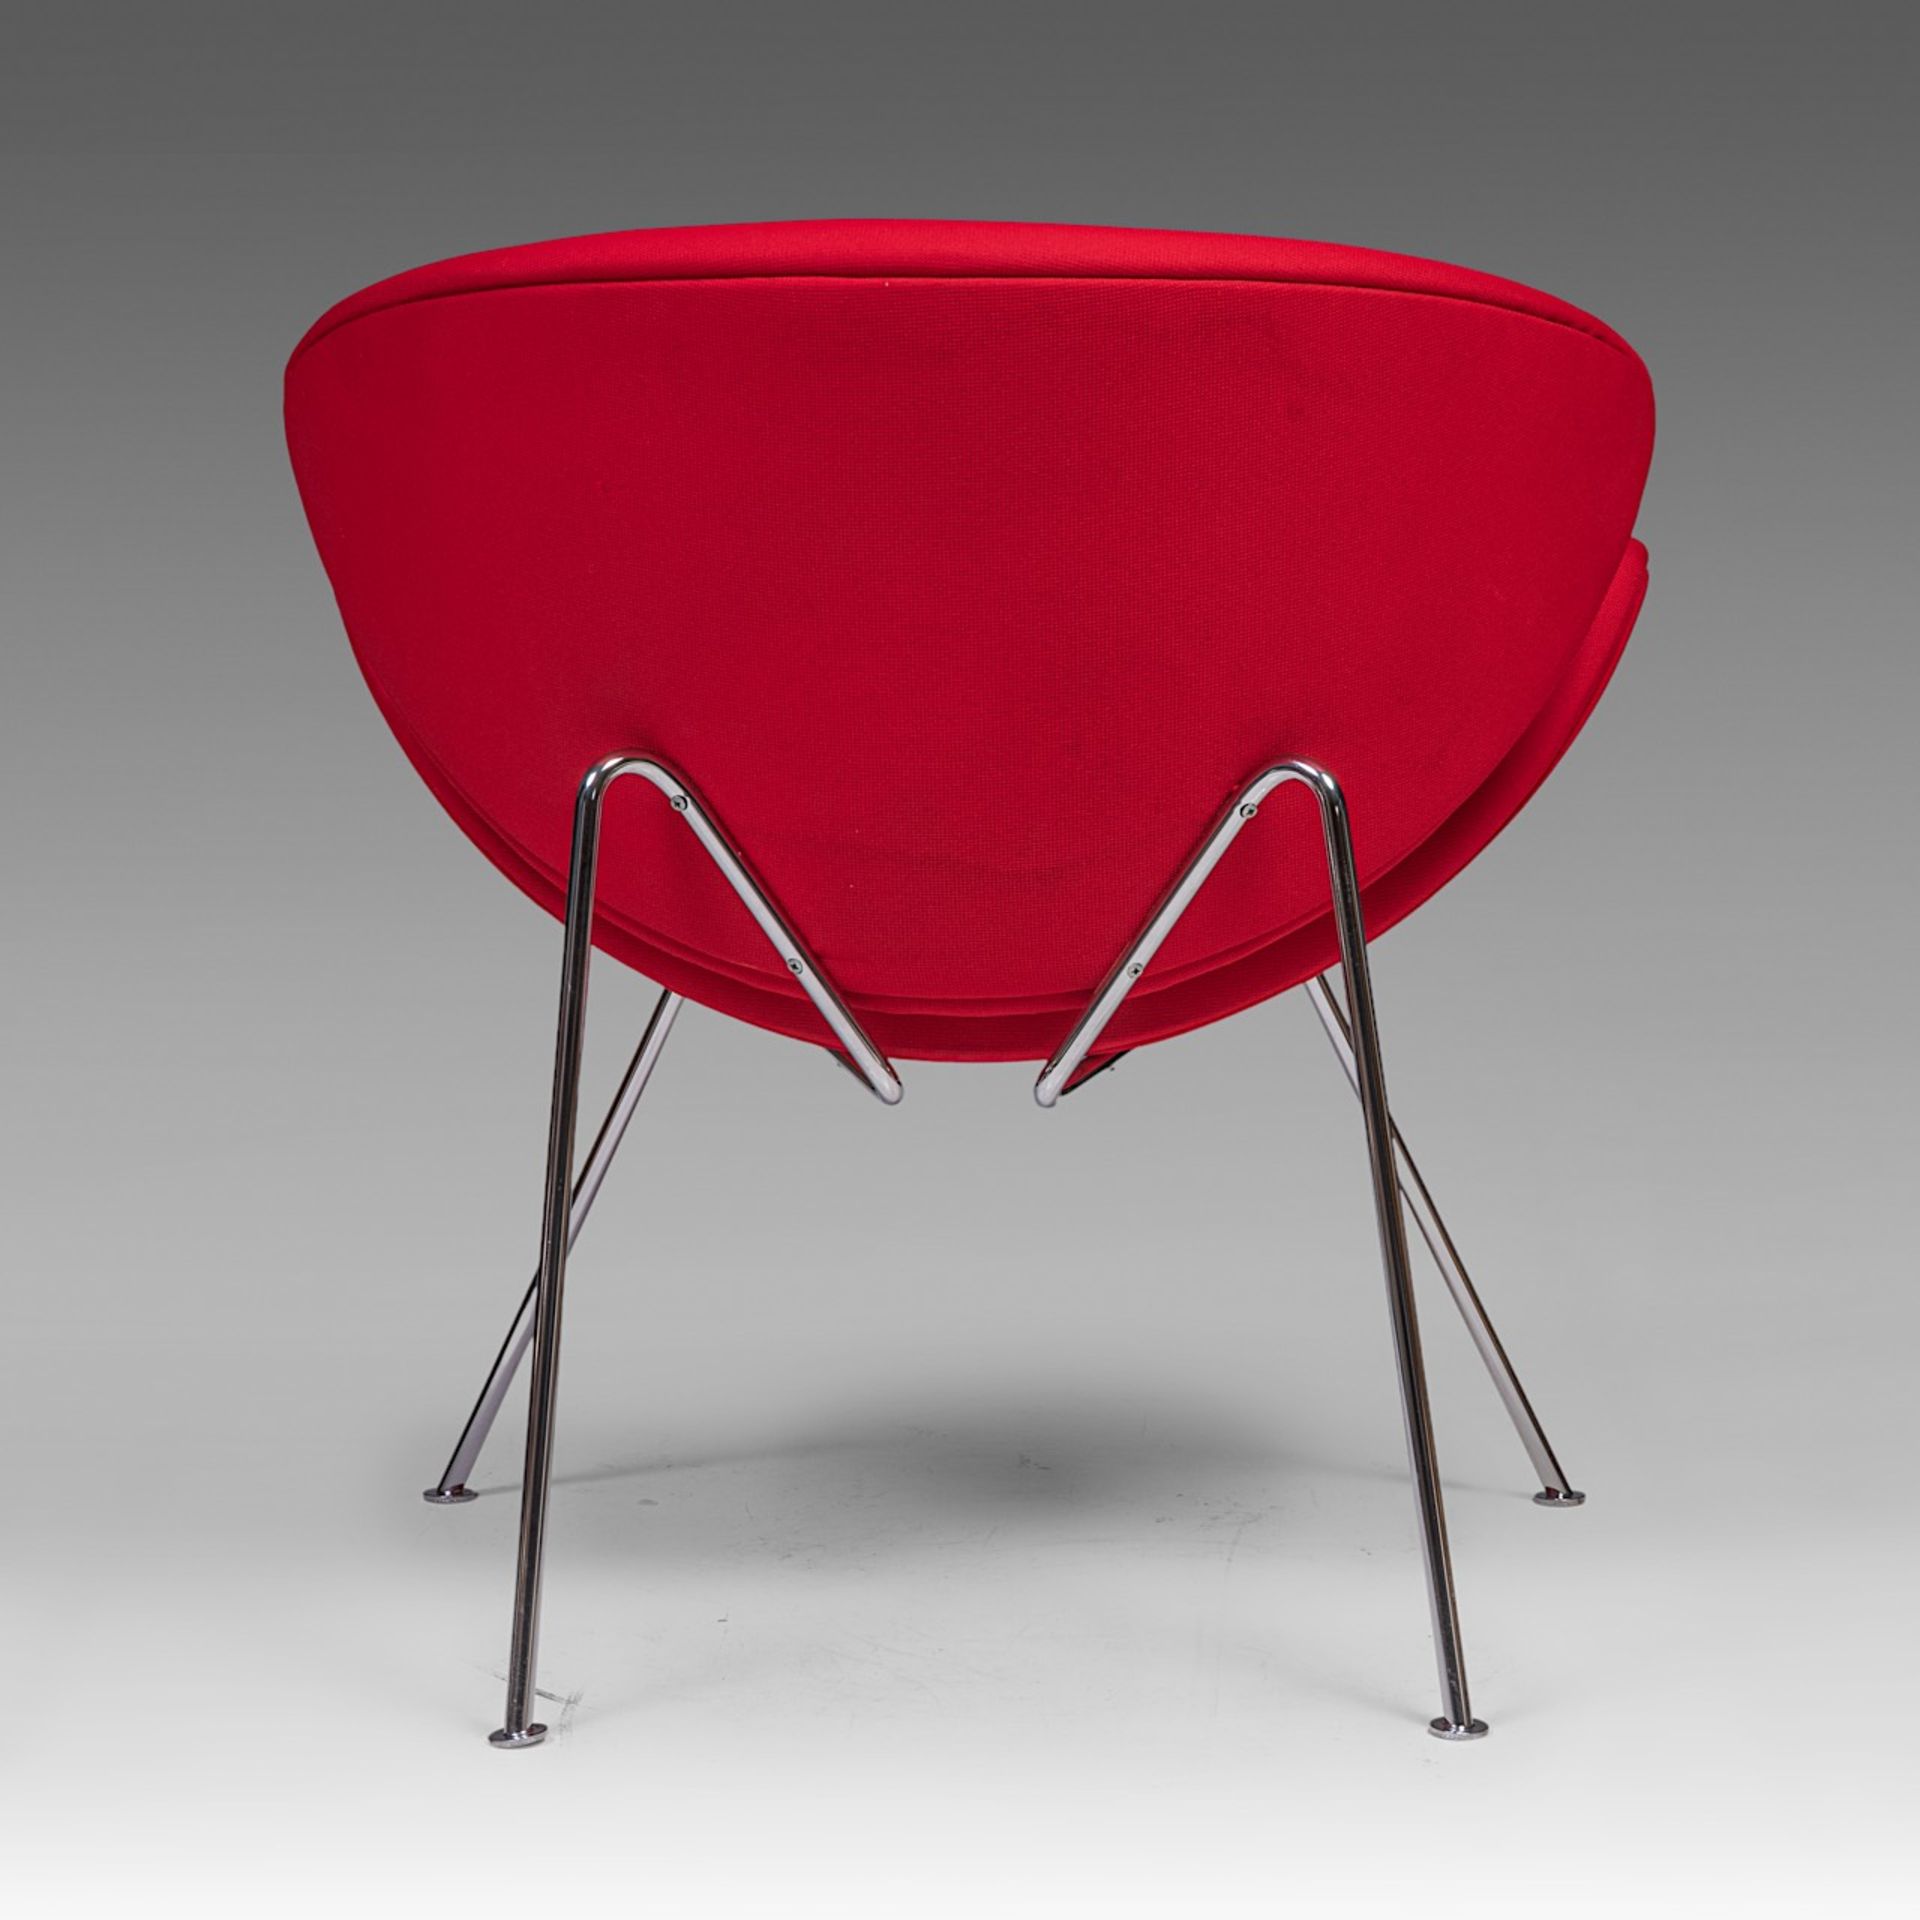 An Orange Slice chair by Pierre Pauline for Artifort, H 85 - W 82 cm - Bild 5 aus 9